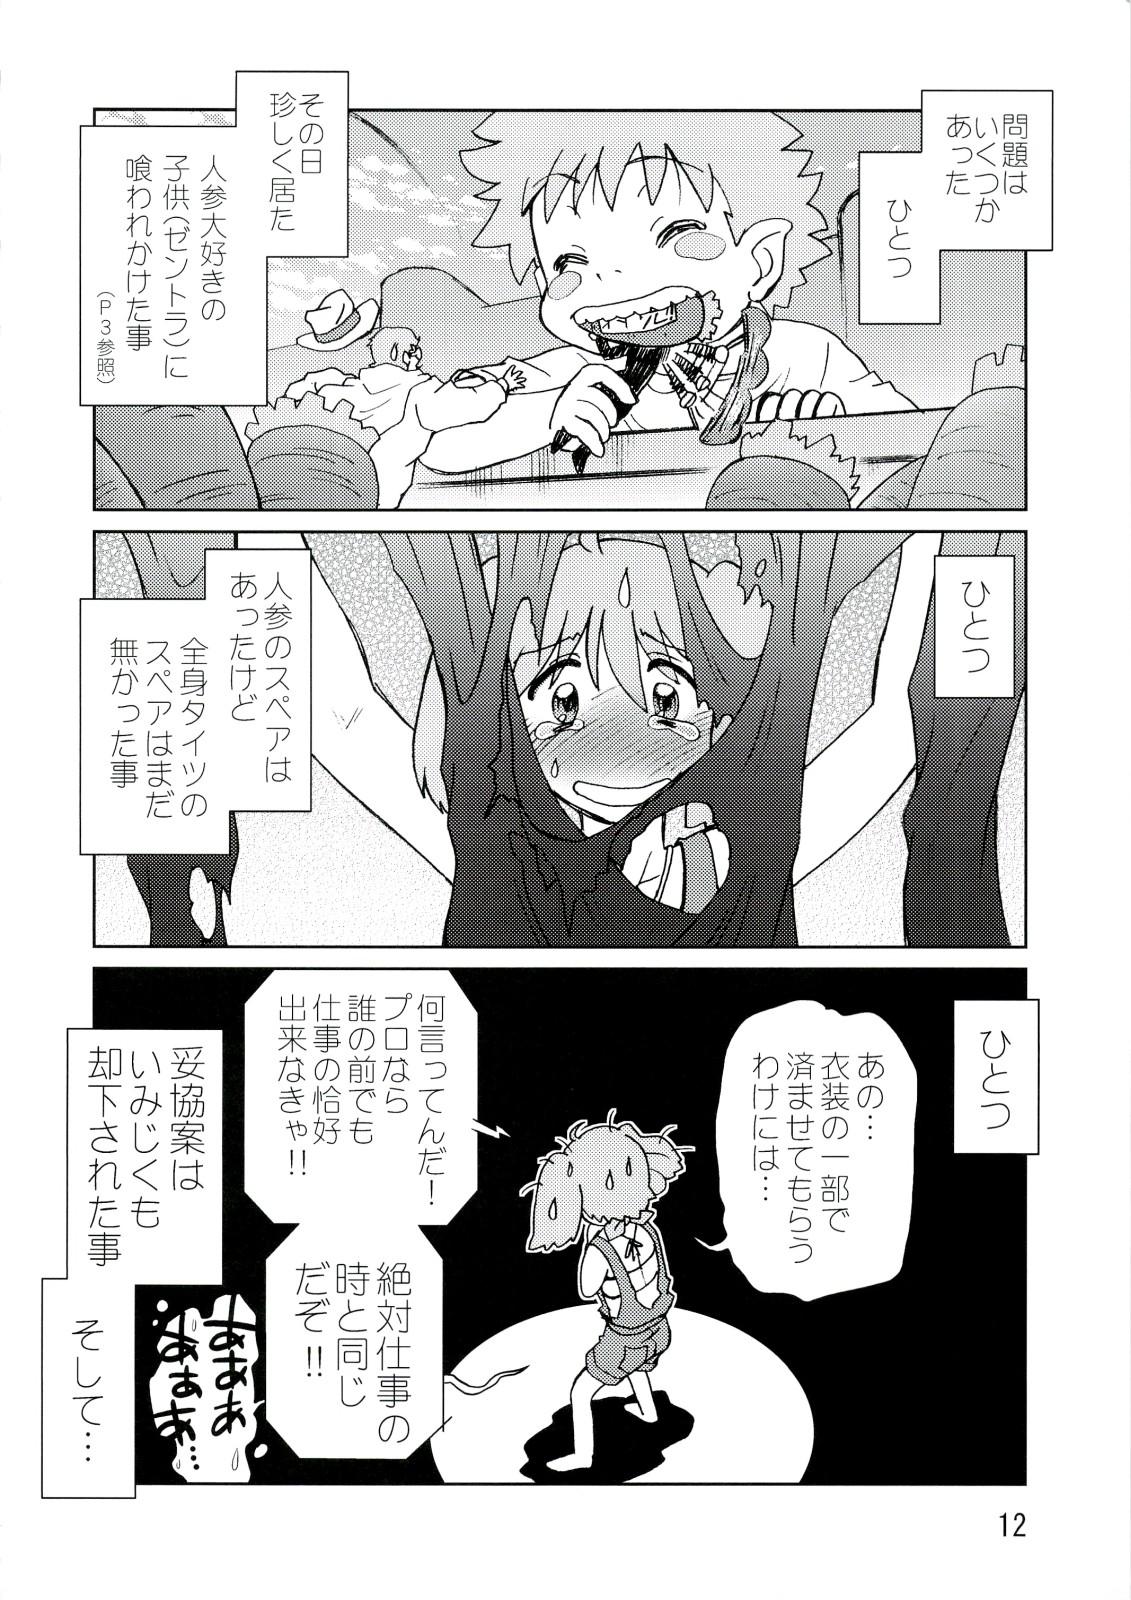 Rubbing Kishou Tenketsu 6 - Macross frontier Dick Sucking - Page 11